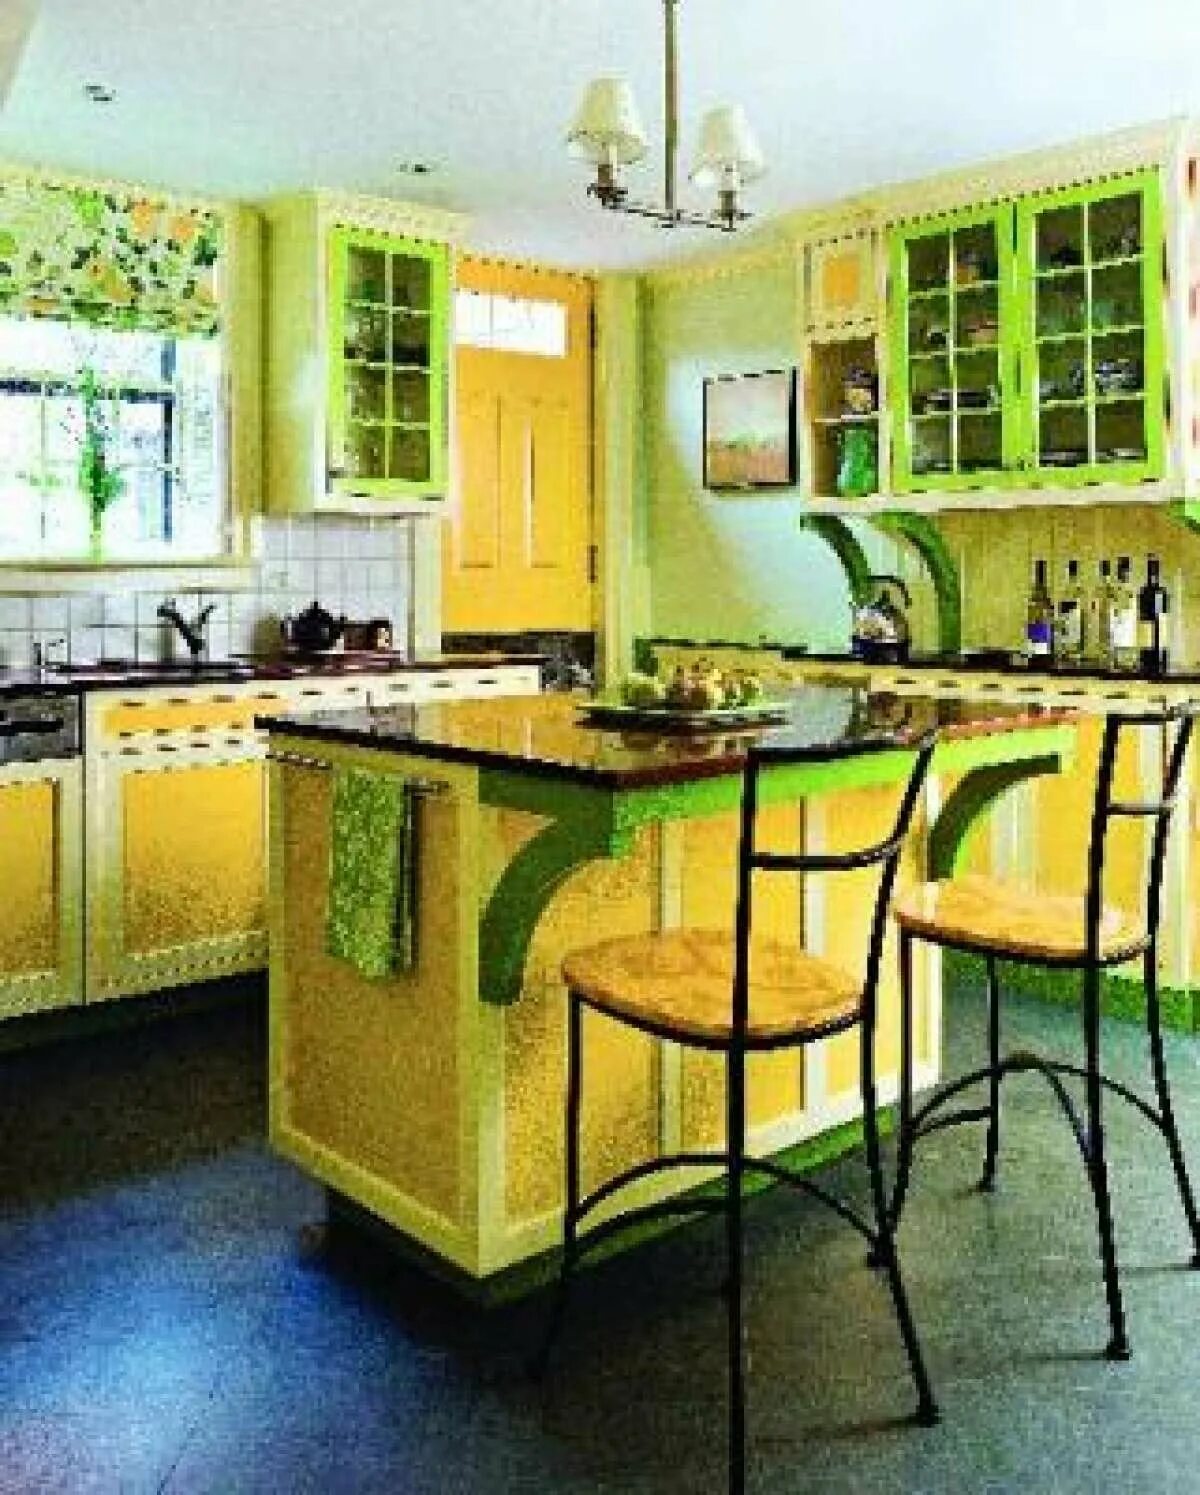 Кухня в желто зеленом цвете. Кухня в зеленых тонах. Кухня с зелеными стенами. Желто зеленая кухня